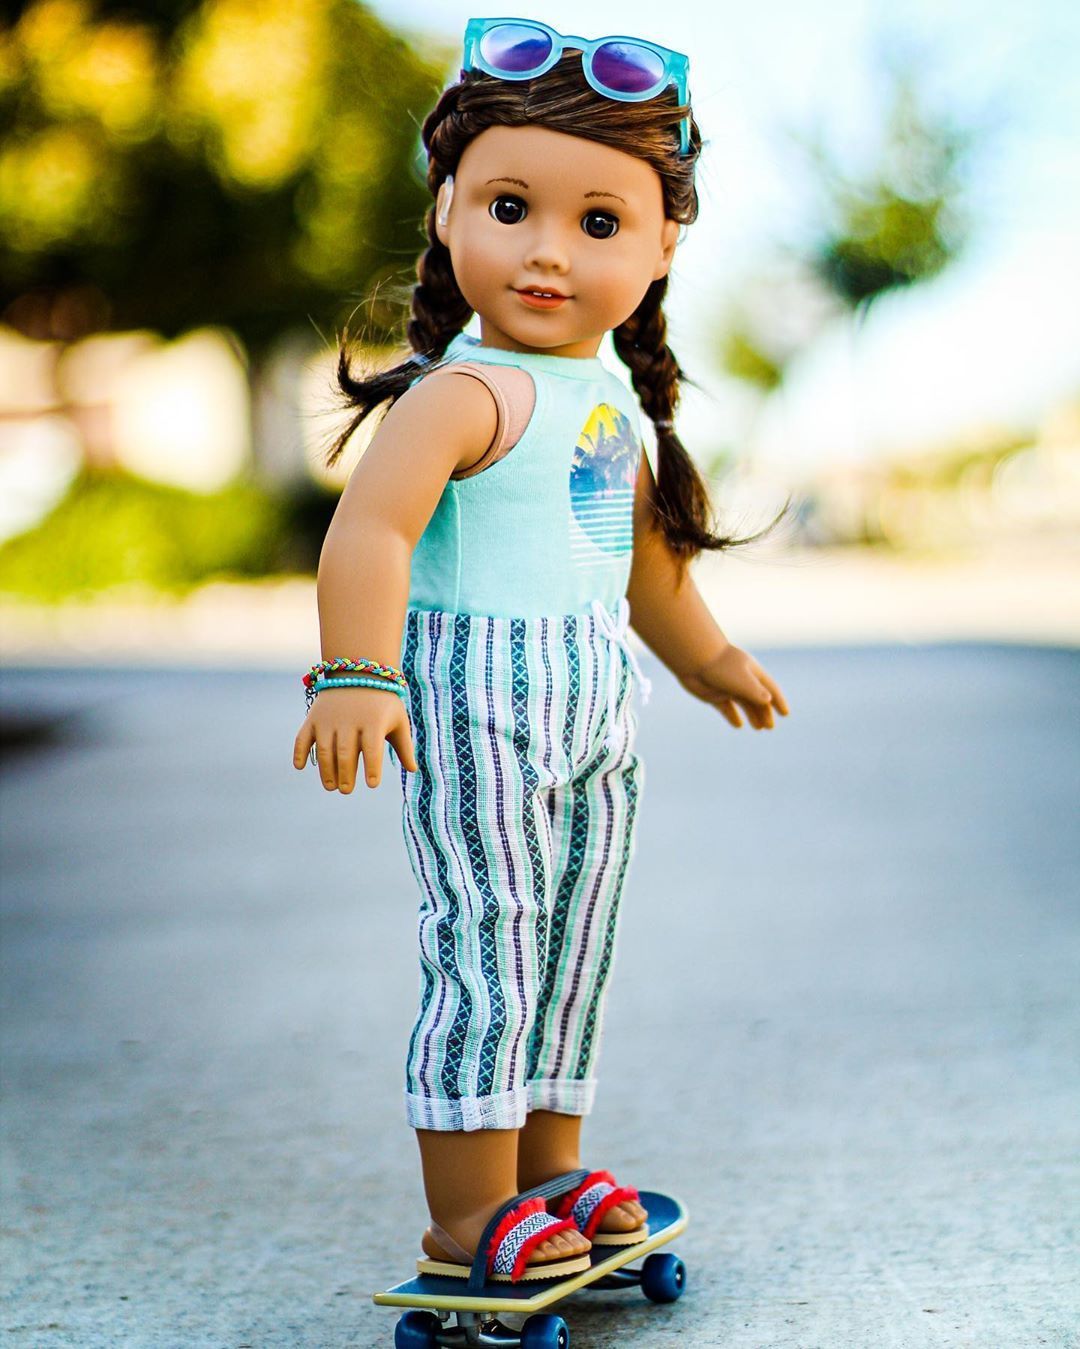 083 AG Kendrick (GOTY 2020) ideas. american girl doll, american girl, american girl doll sets